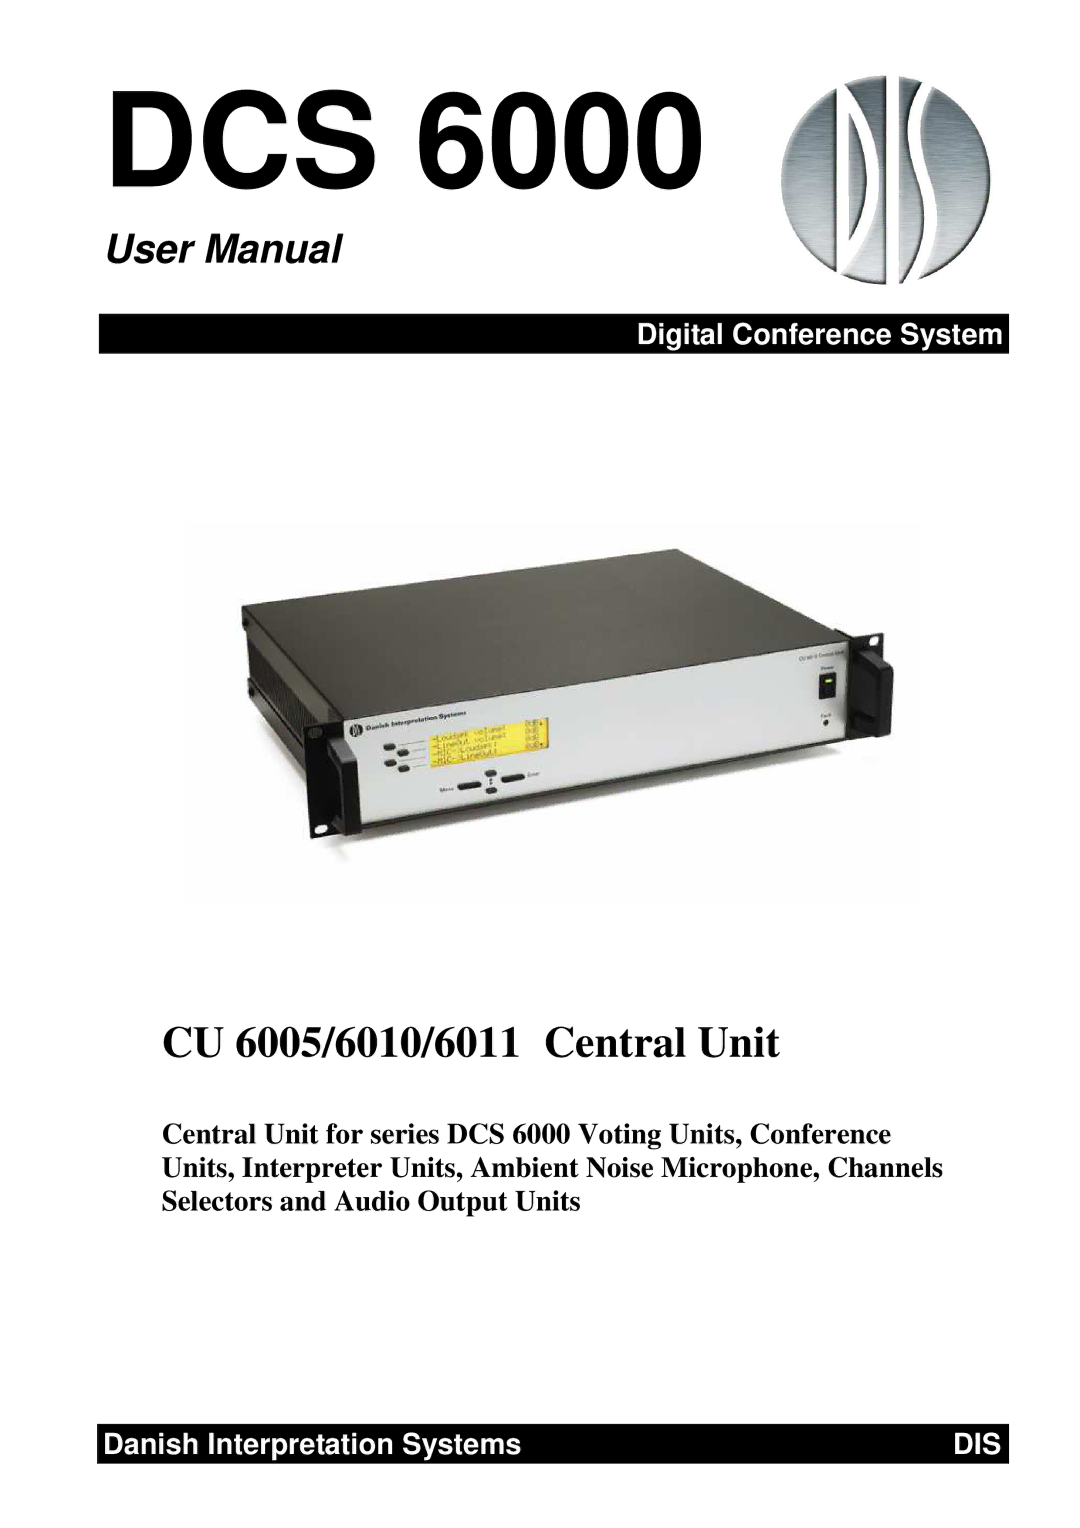 Listen Technologies CU 6005, CU 6011, CU 6010 user manual Dcs 